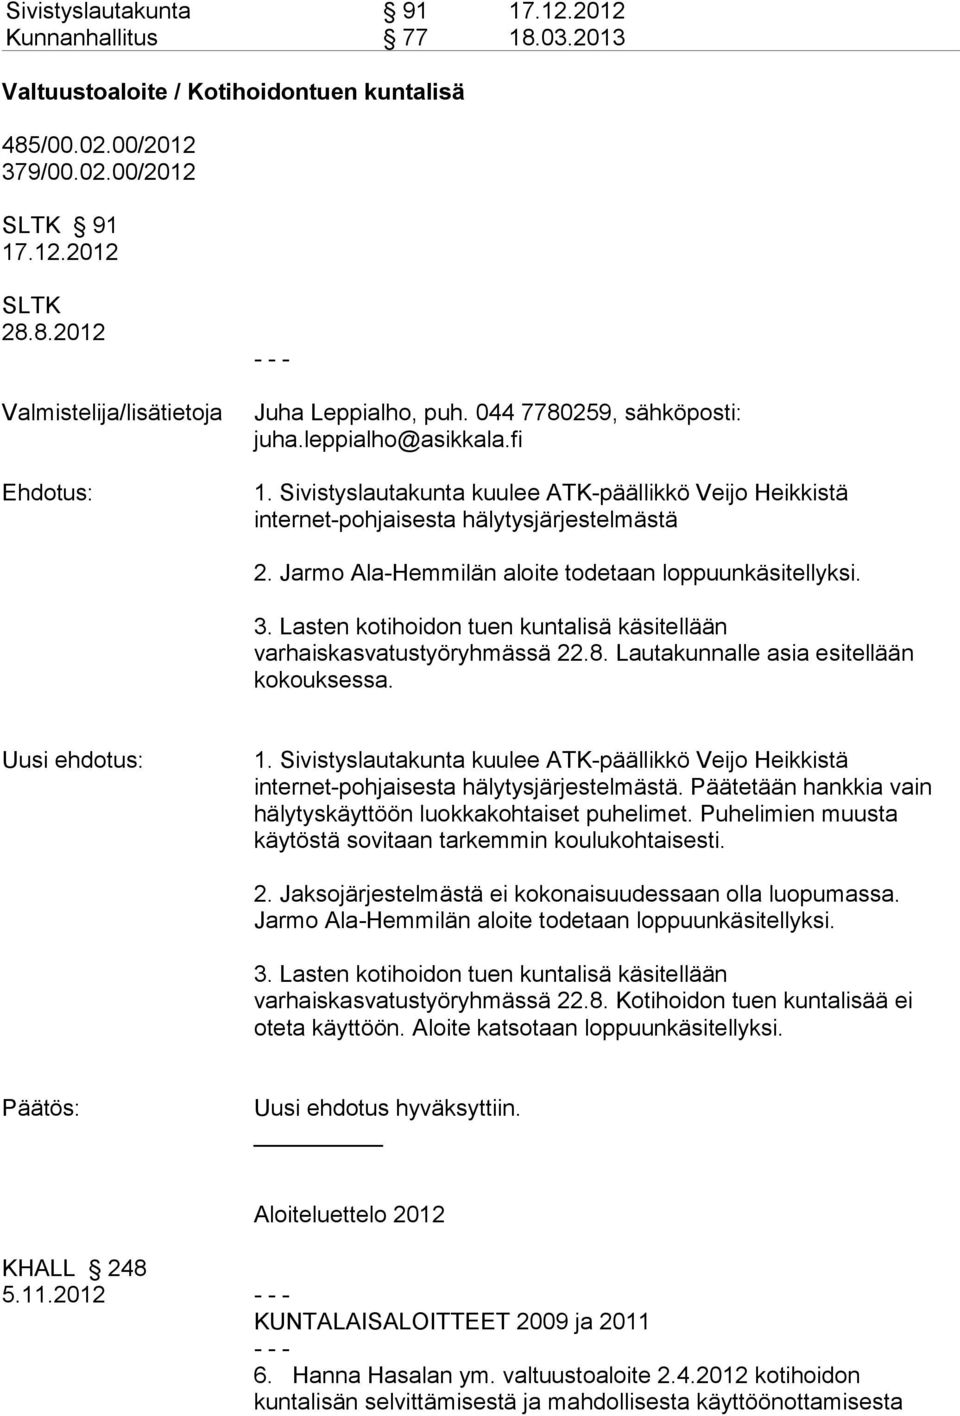 Jarmo Ala-Hemmilän aloite todetaan loppuunkäsitellyksi. 3. Lasten kotihoidon tuen kuntalisä käsitellään varhaiskasvatustyöryhmässä 22.8. Lautakunnalle asia esitellään kokouksessa. Uusi ehdotus: 1.